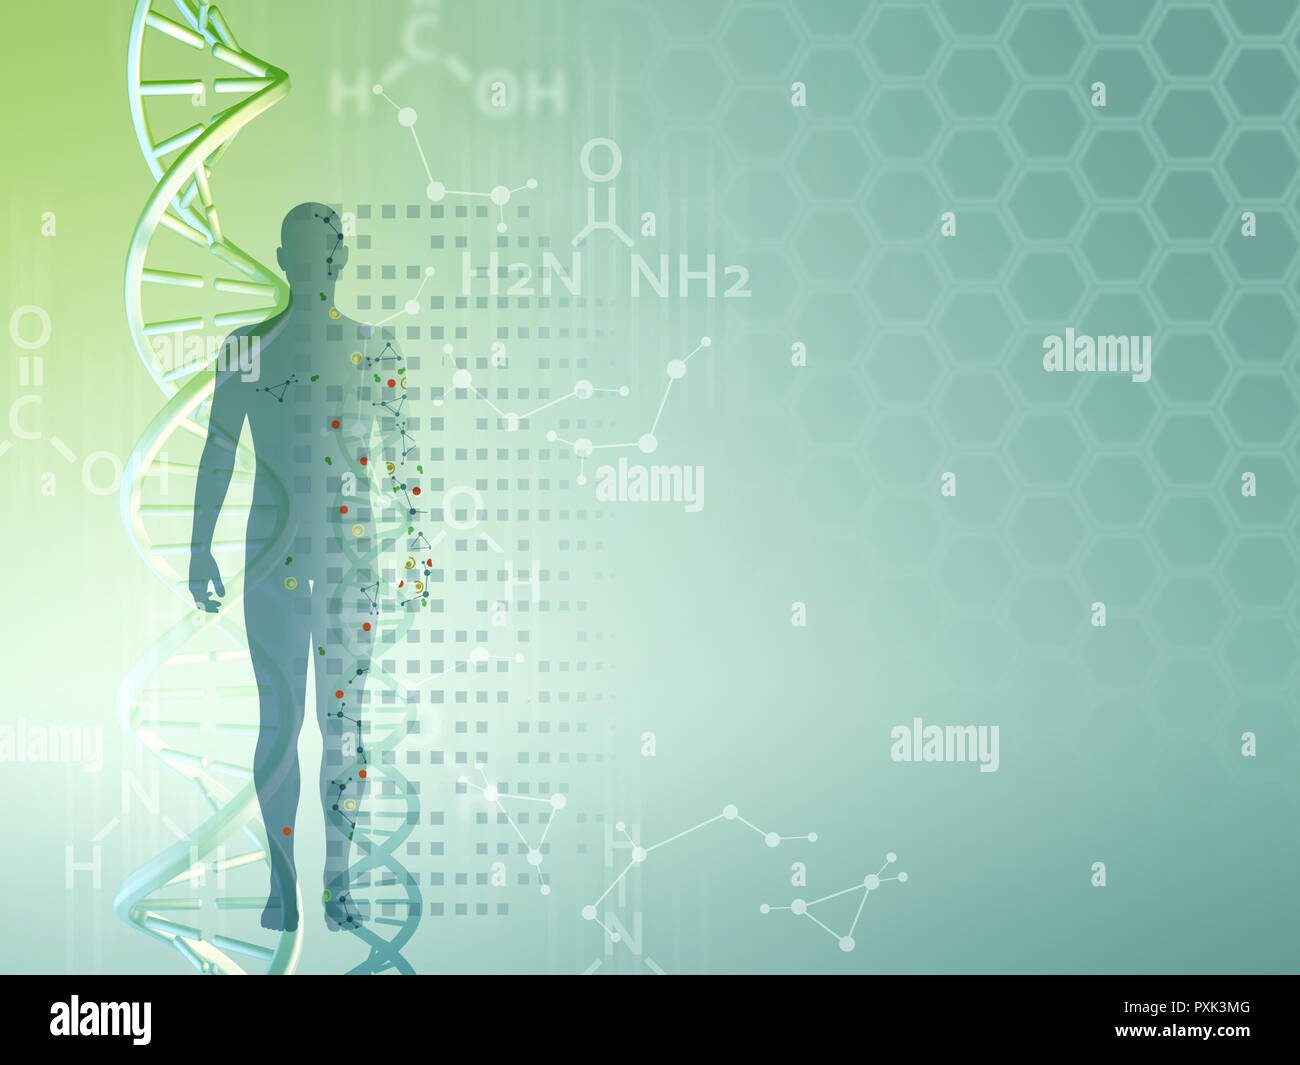 Contexte de la recherche génétique, peut être utilisé comme modèle pour des présentations à thème médical. Illustration numérique. Banque D'Images